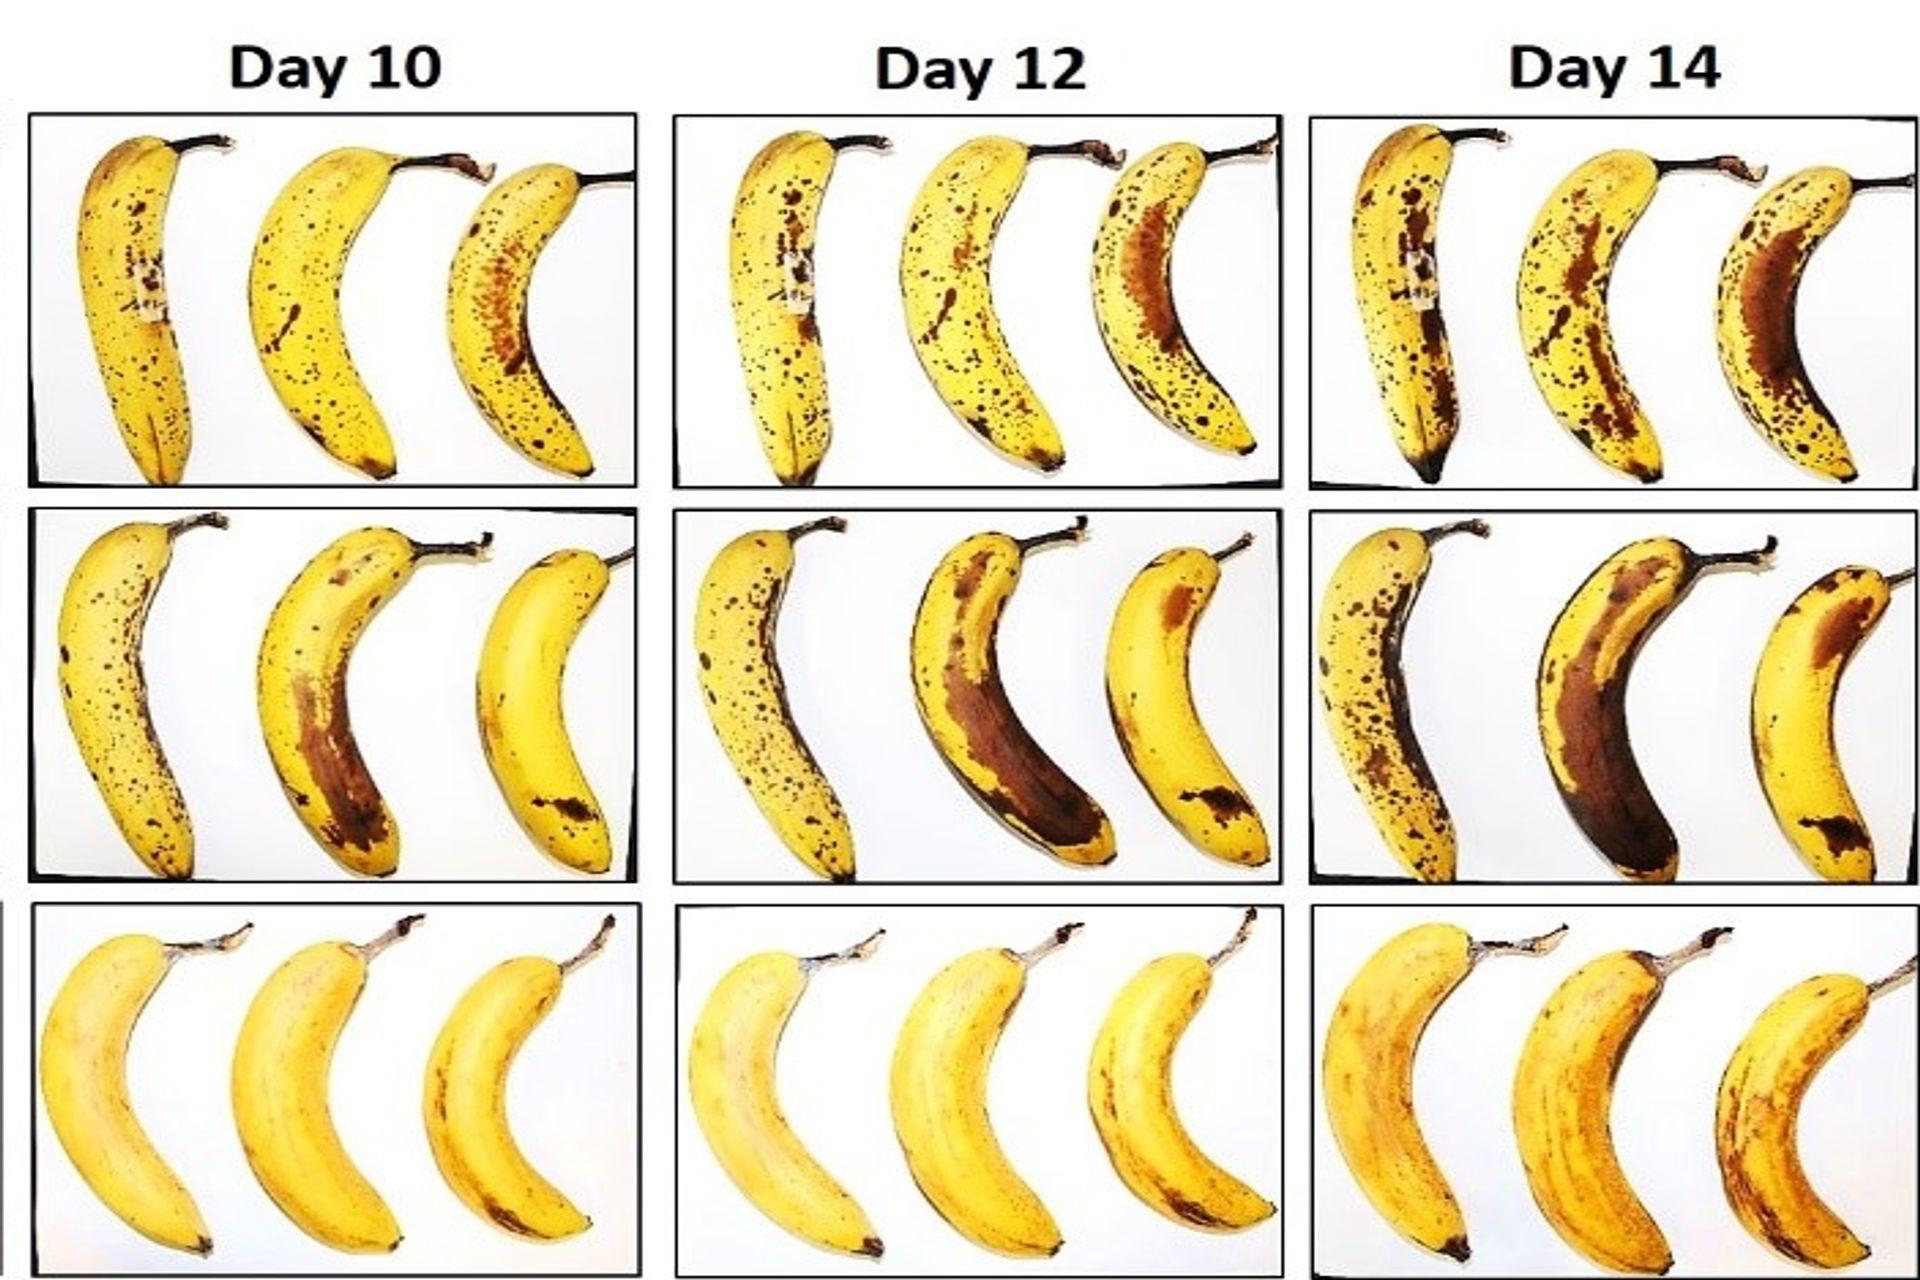 Tre banane sottoposte dall’EMPA e da Lidl Svizzera al test di conservazione con e senza involucro in cellulosa fibrosa dopo 10, 12 e 14 giorni